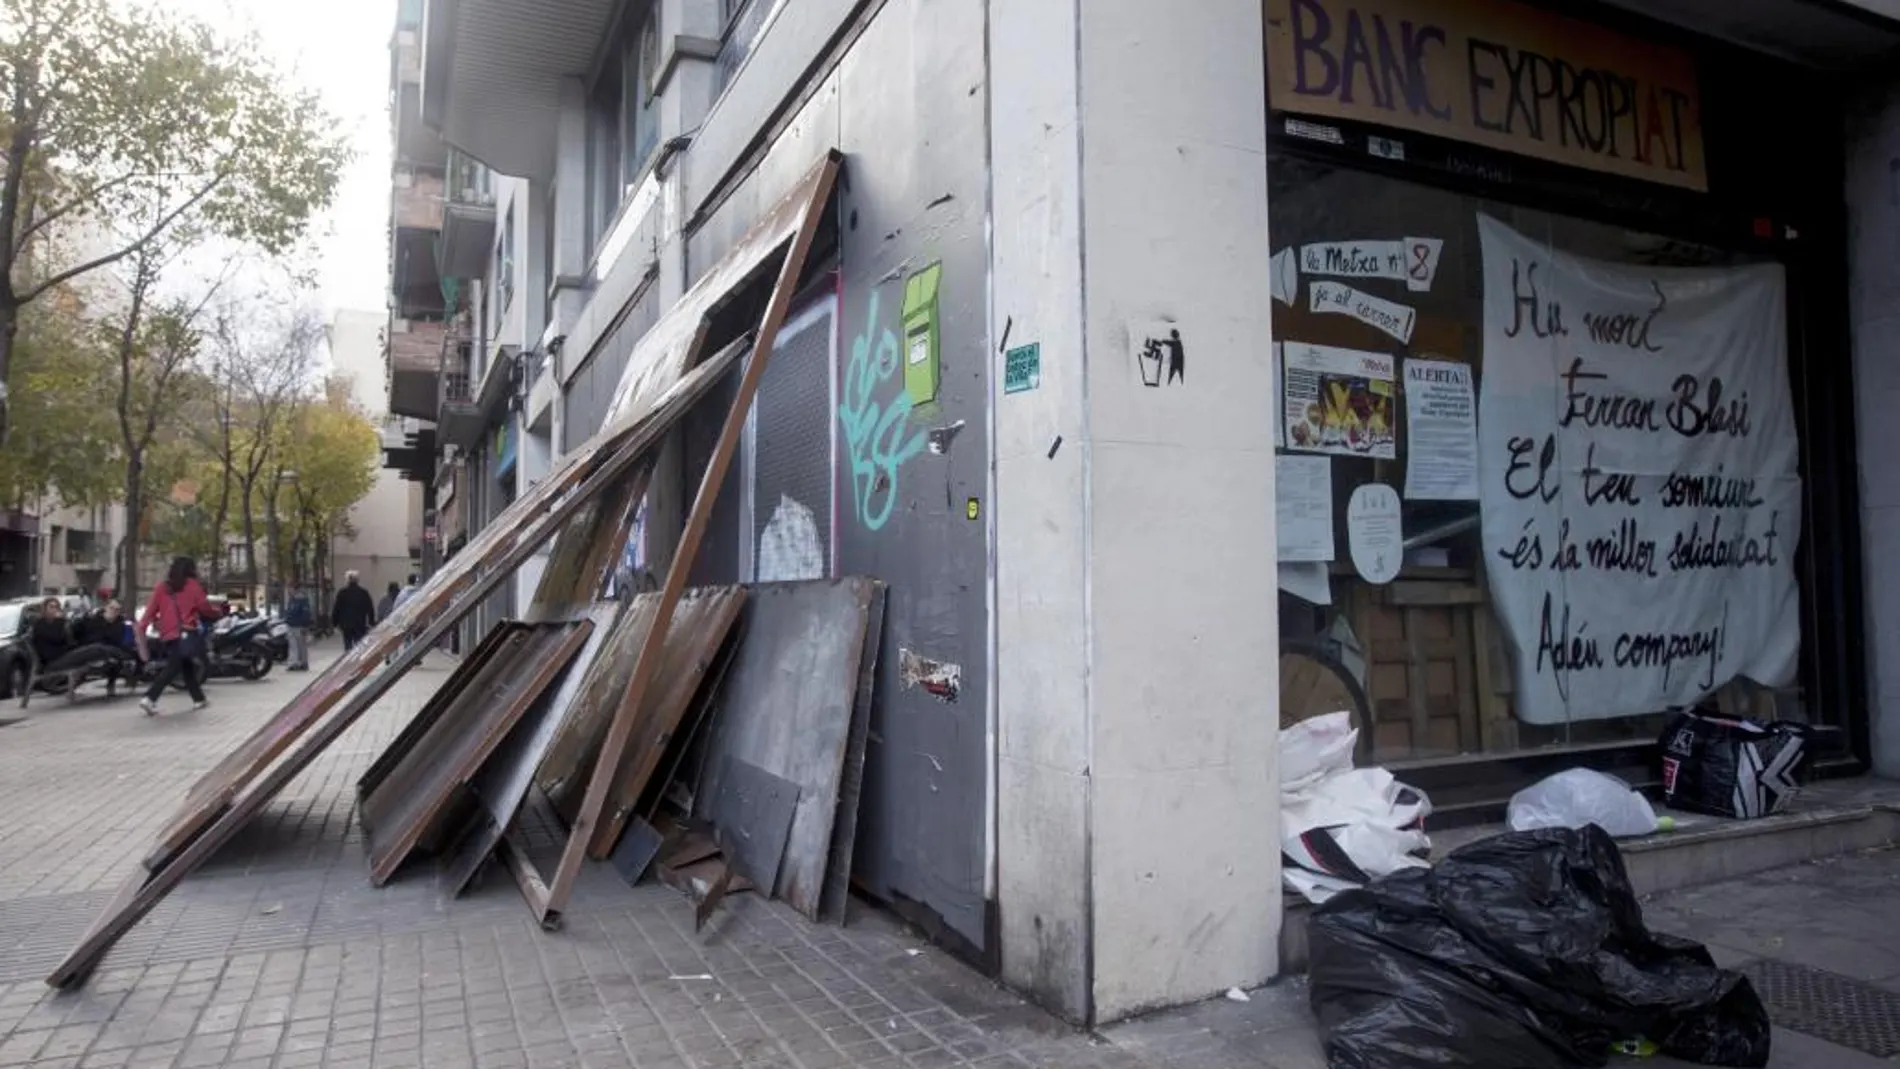 El denominado "Banco Expropiado" en el barrio de Gràcia de Barcelona, uno de los lugares que tomó el movimiento okupa y desató grandes disturbios